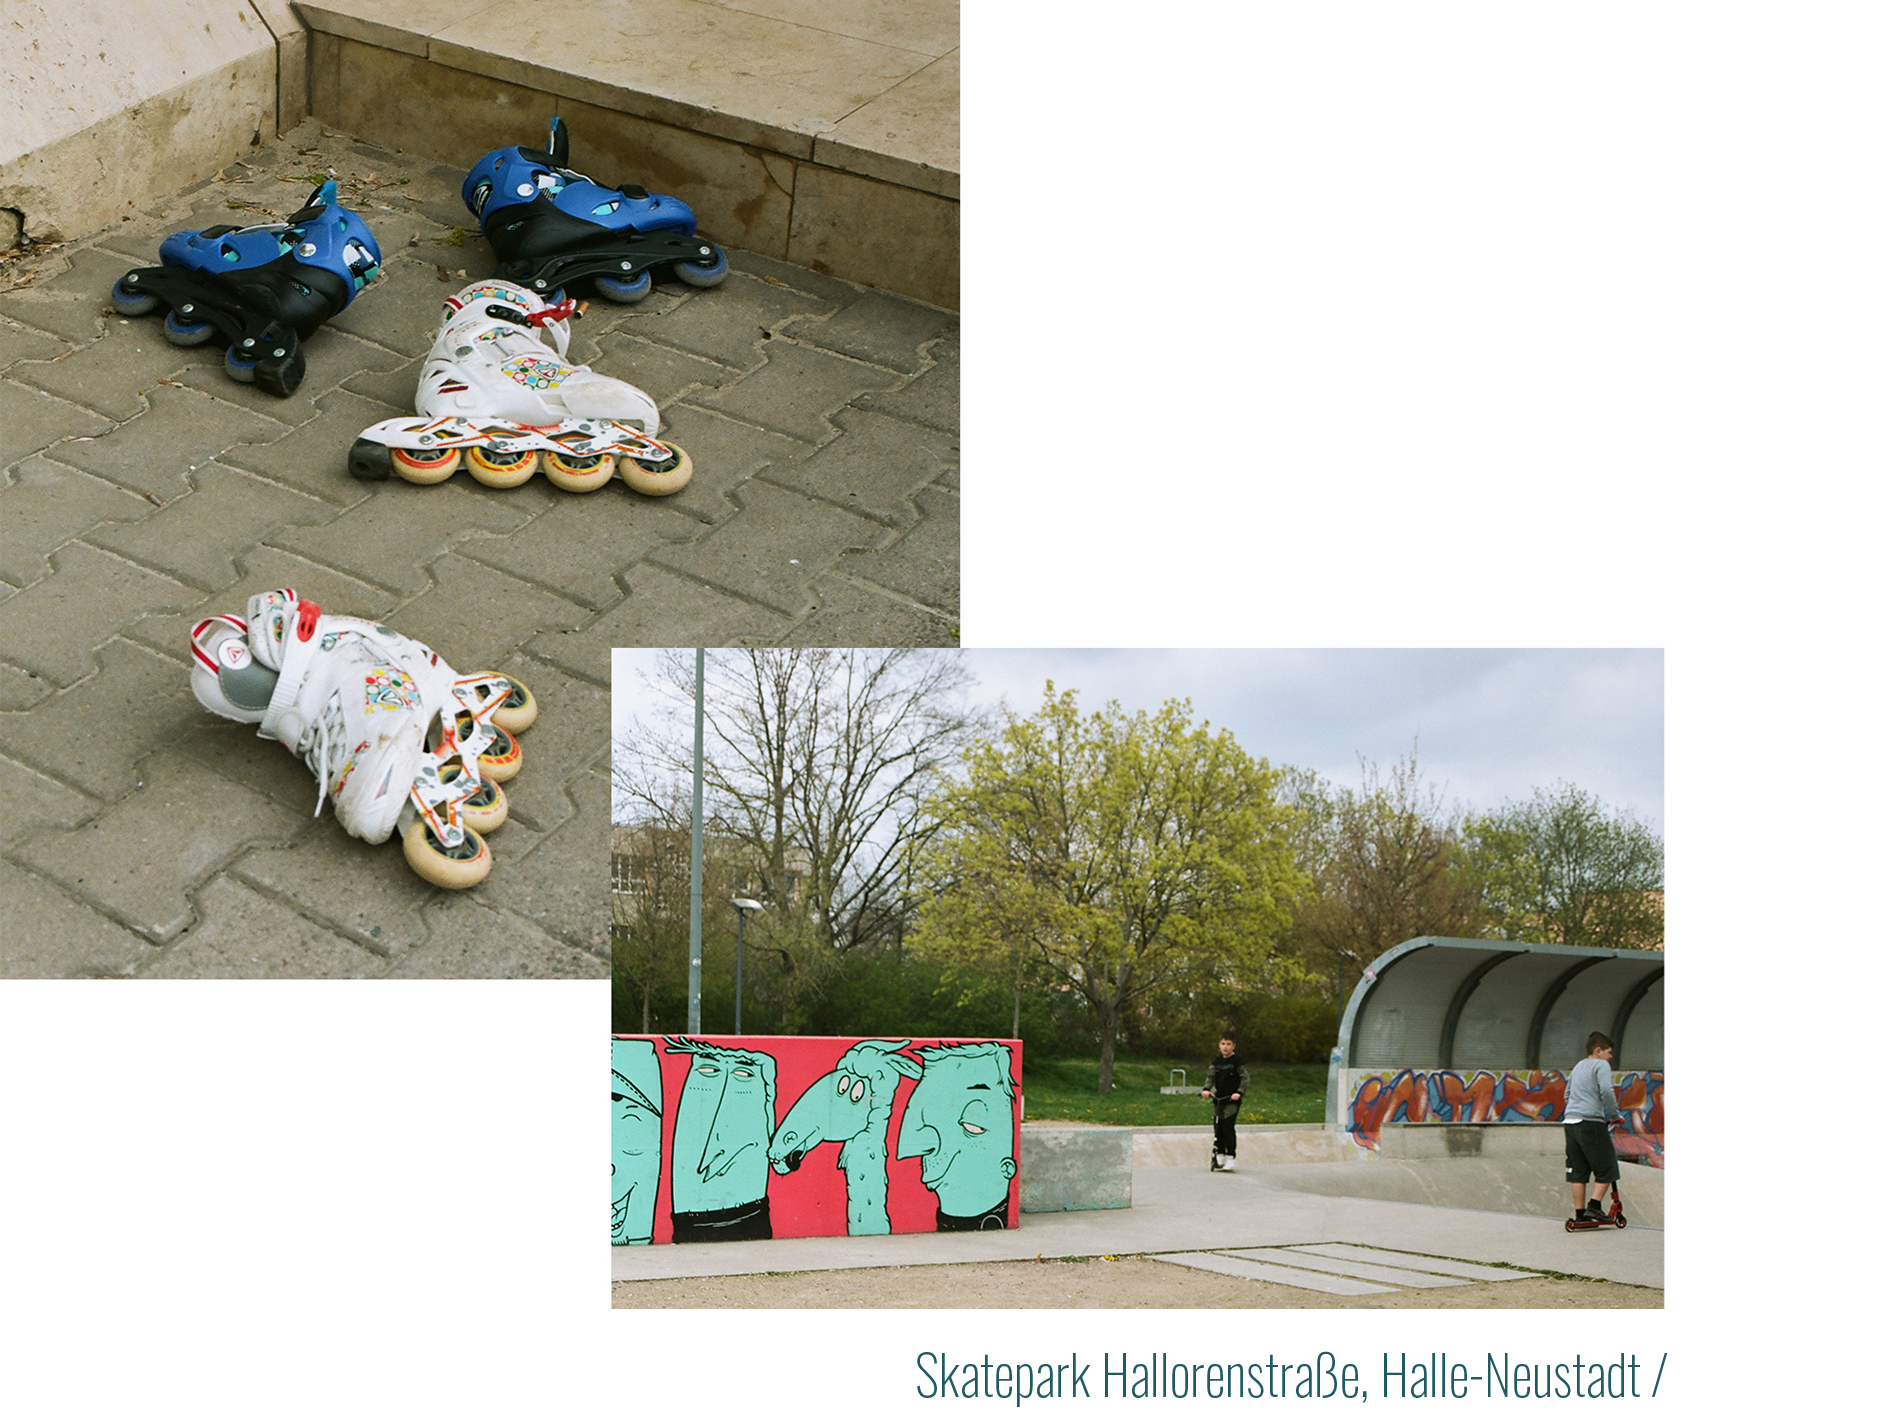 Ein Skatepark in Halle-Neustadt - 
            Bild 1: Bunte Inline-Skates liegen zurückgelassen auf dem Gehsteig.
            Bild 2: Aus der Ferne sind zwei Jungs auf Rollern und eine Mauer mit Graffitifiguren zu sehen.
            